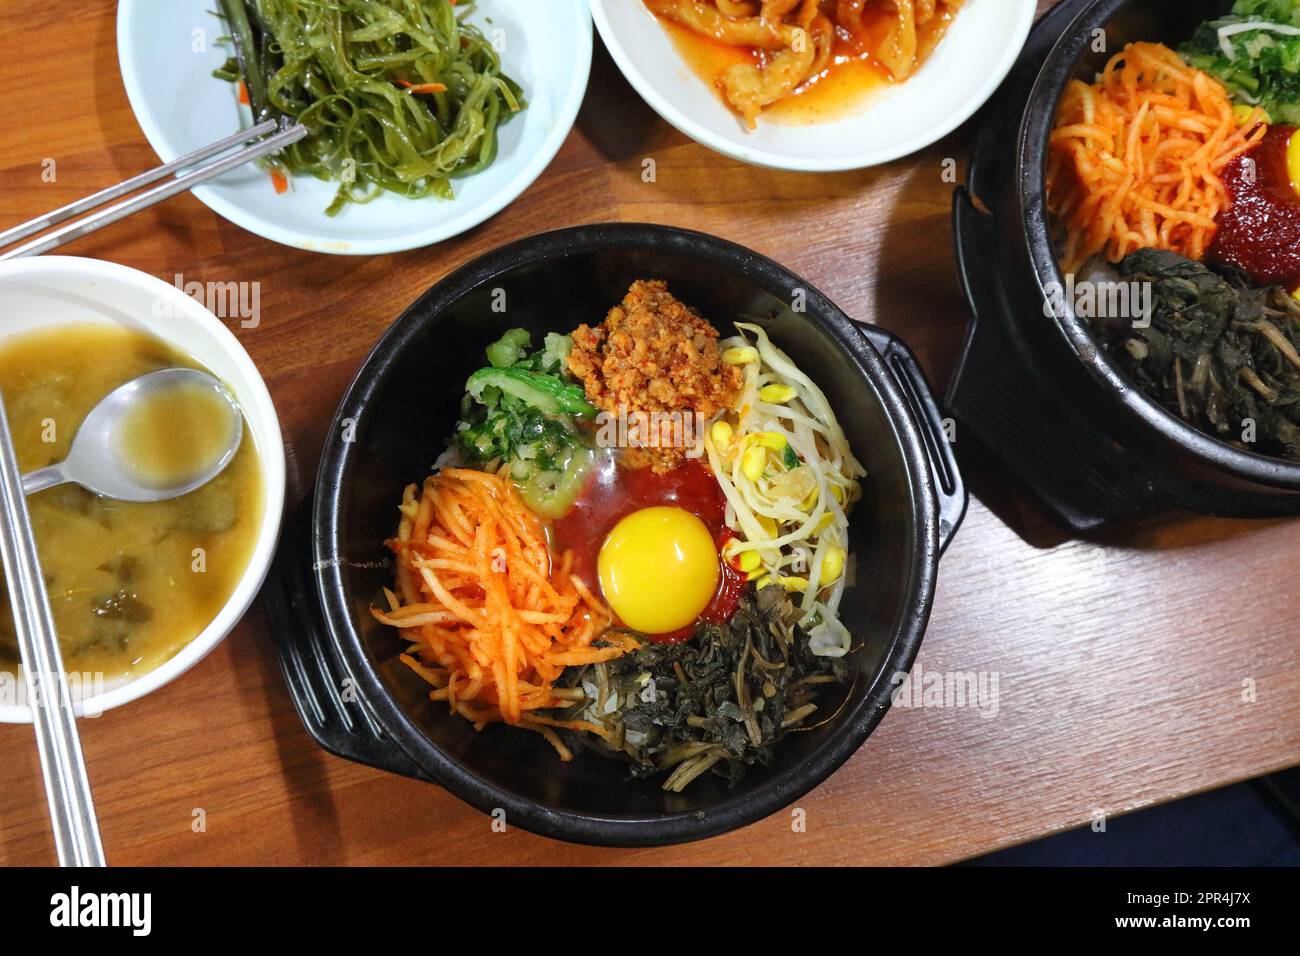 Bibimbap dans un restaurant local à Busan, Corée du Sud. Cuisine coréenne. Banque D'Images